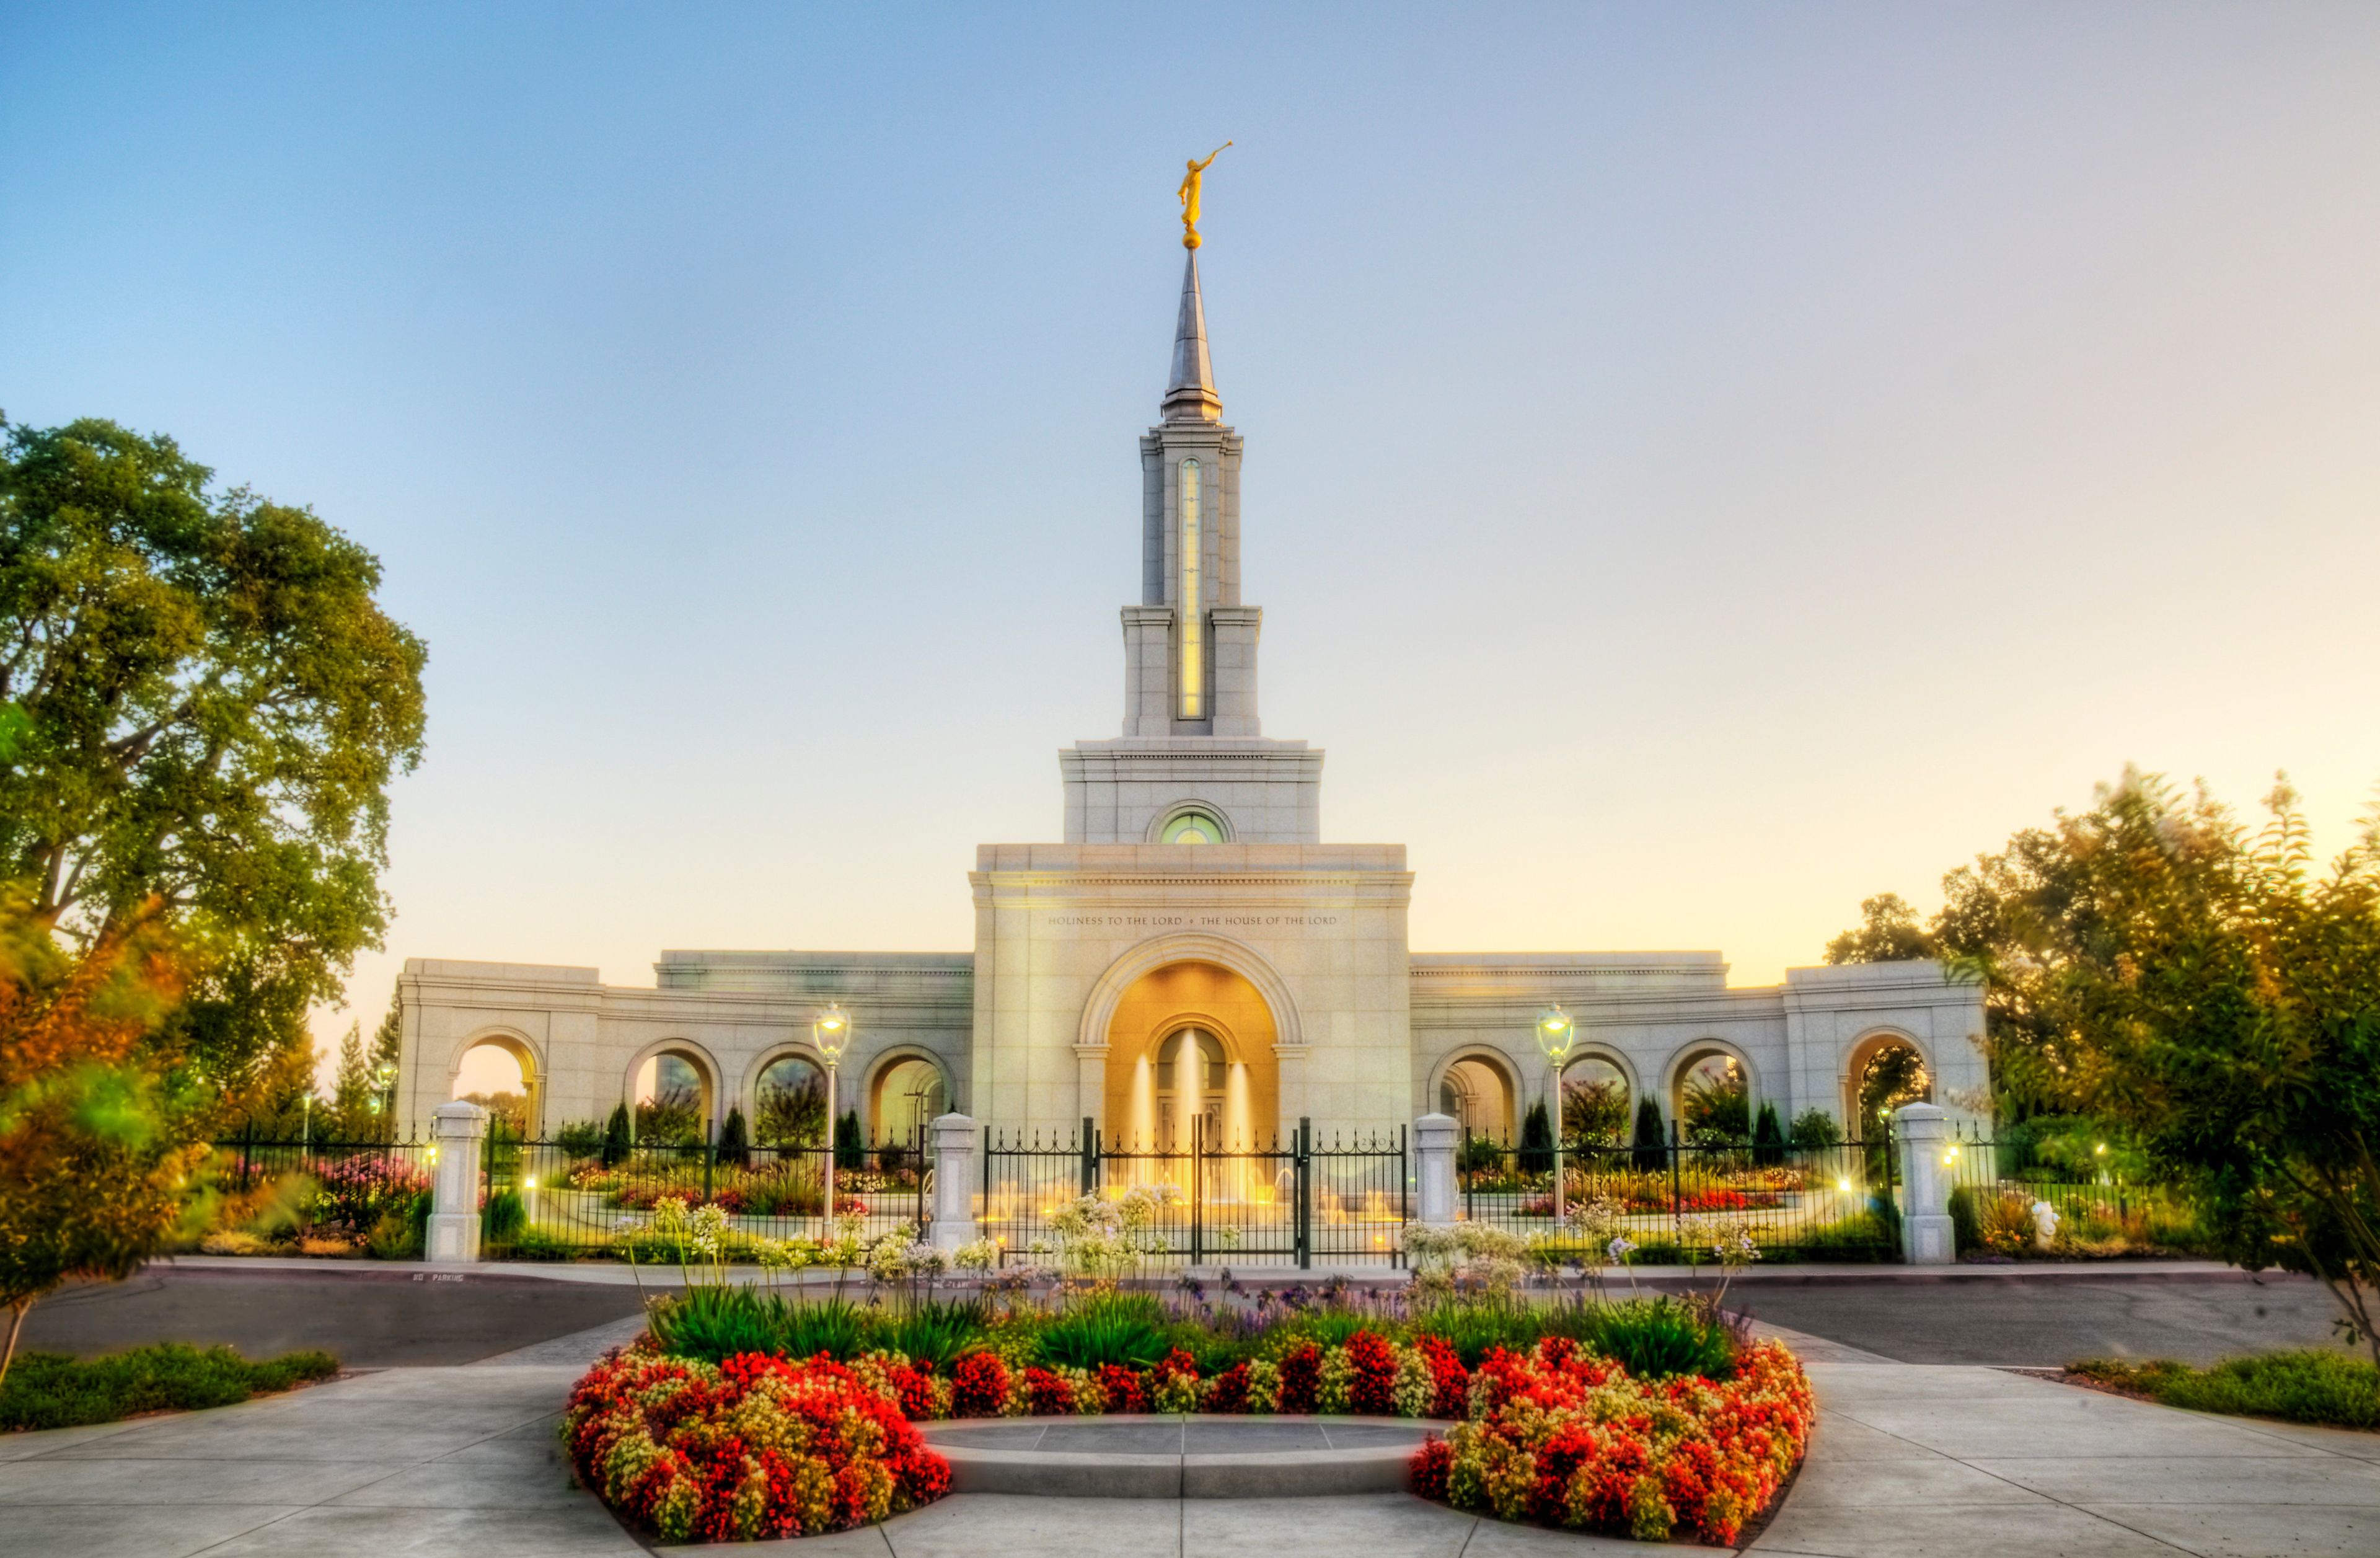 The Sacramento California Temple, with a water fountain near the entrance.